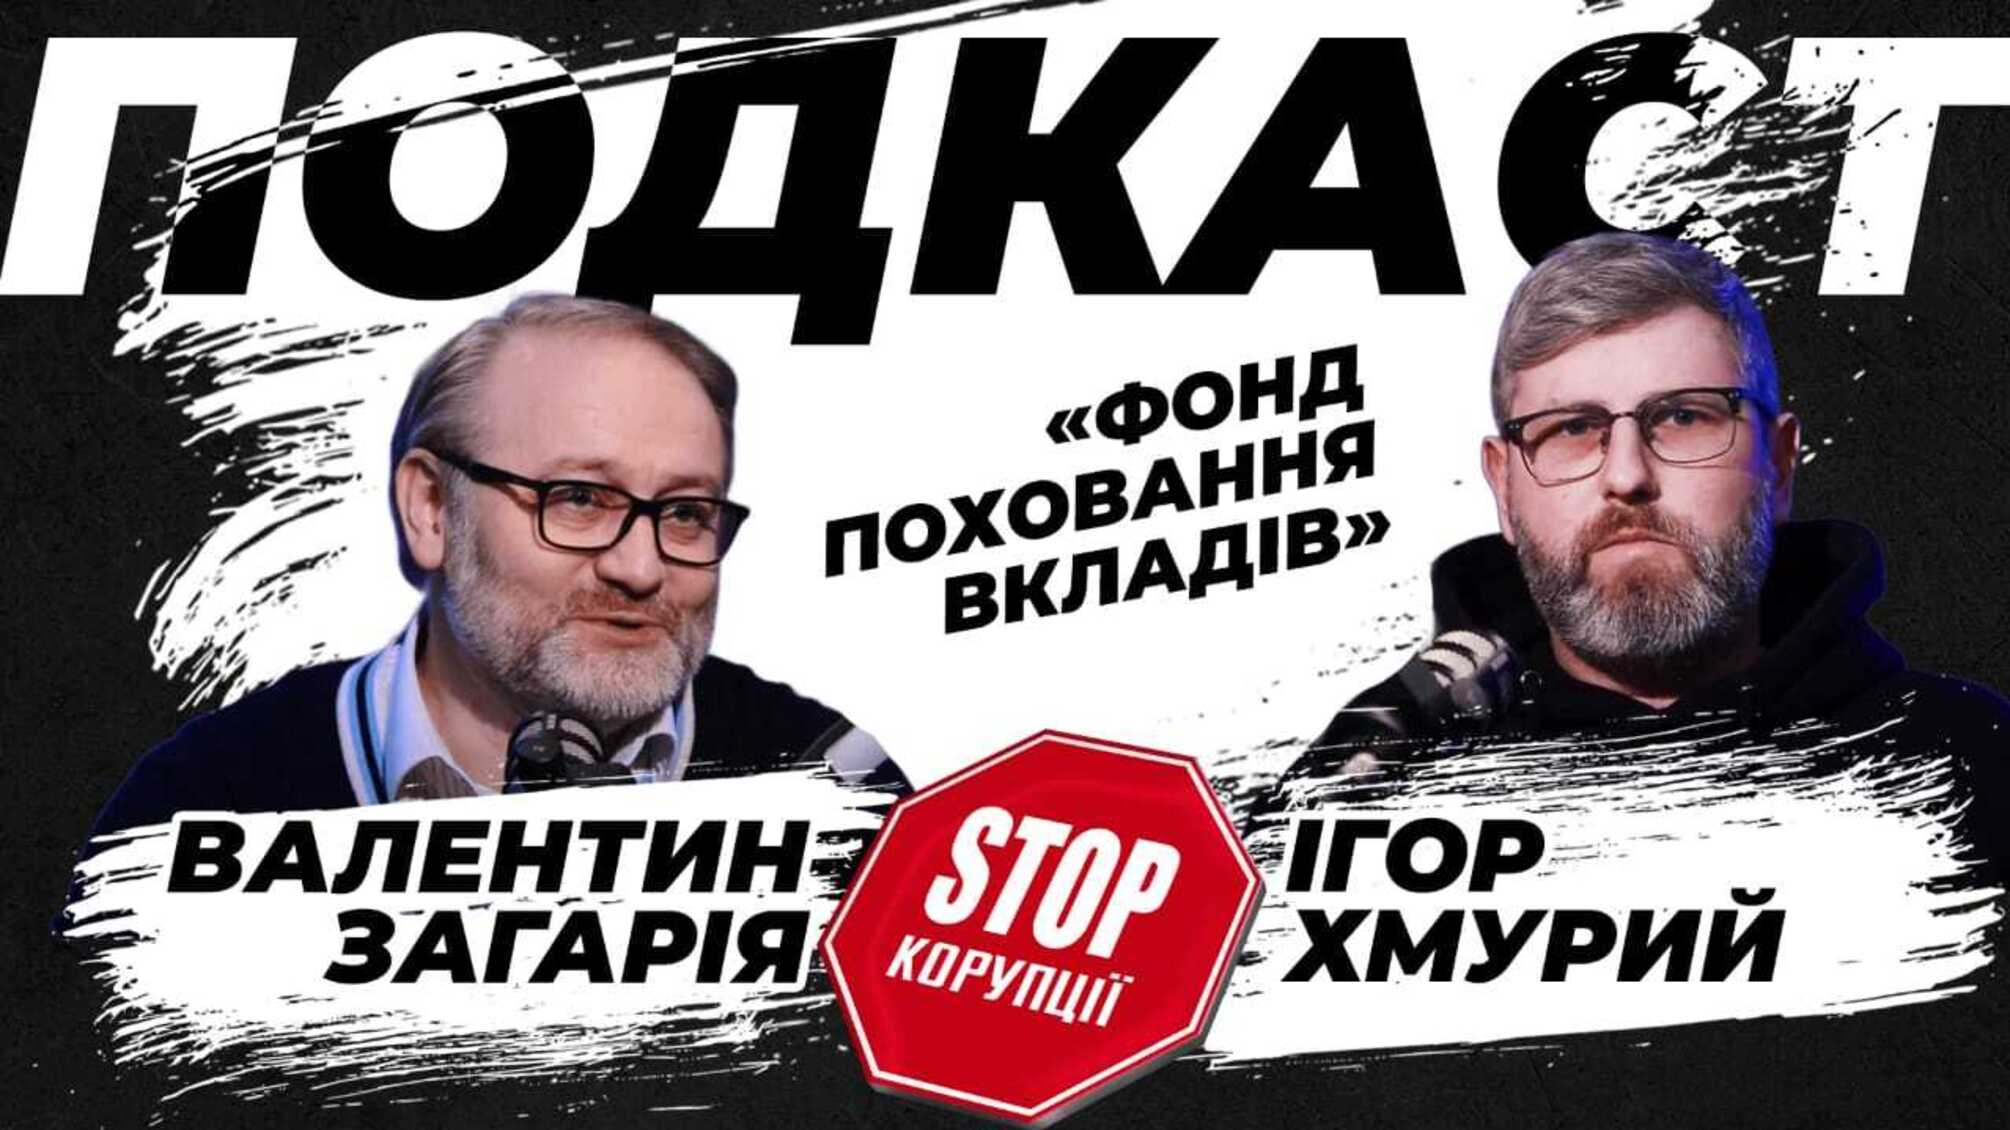 Валентин Загарія про “Фонд поховання вкладів” і недоторканість українських банкірів